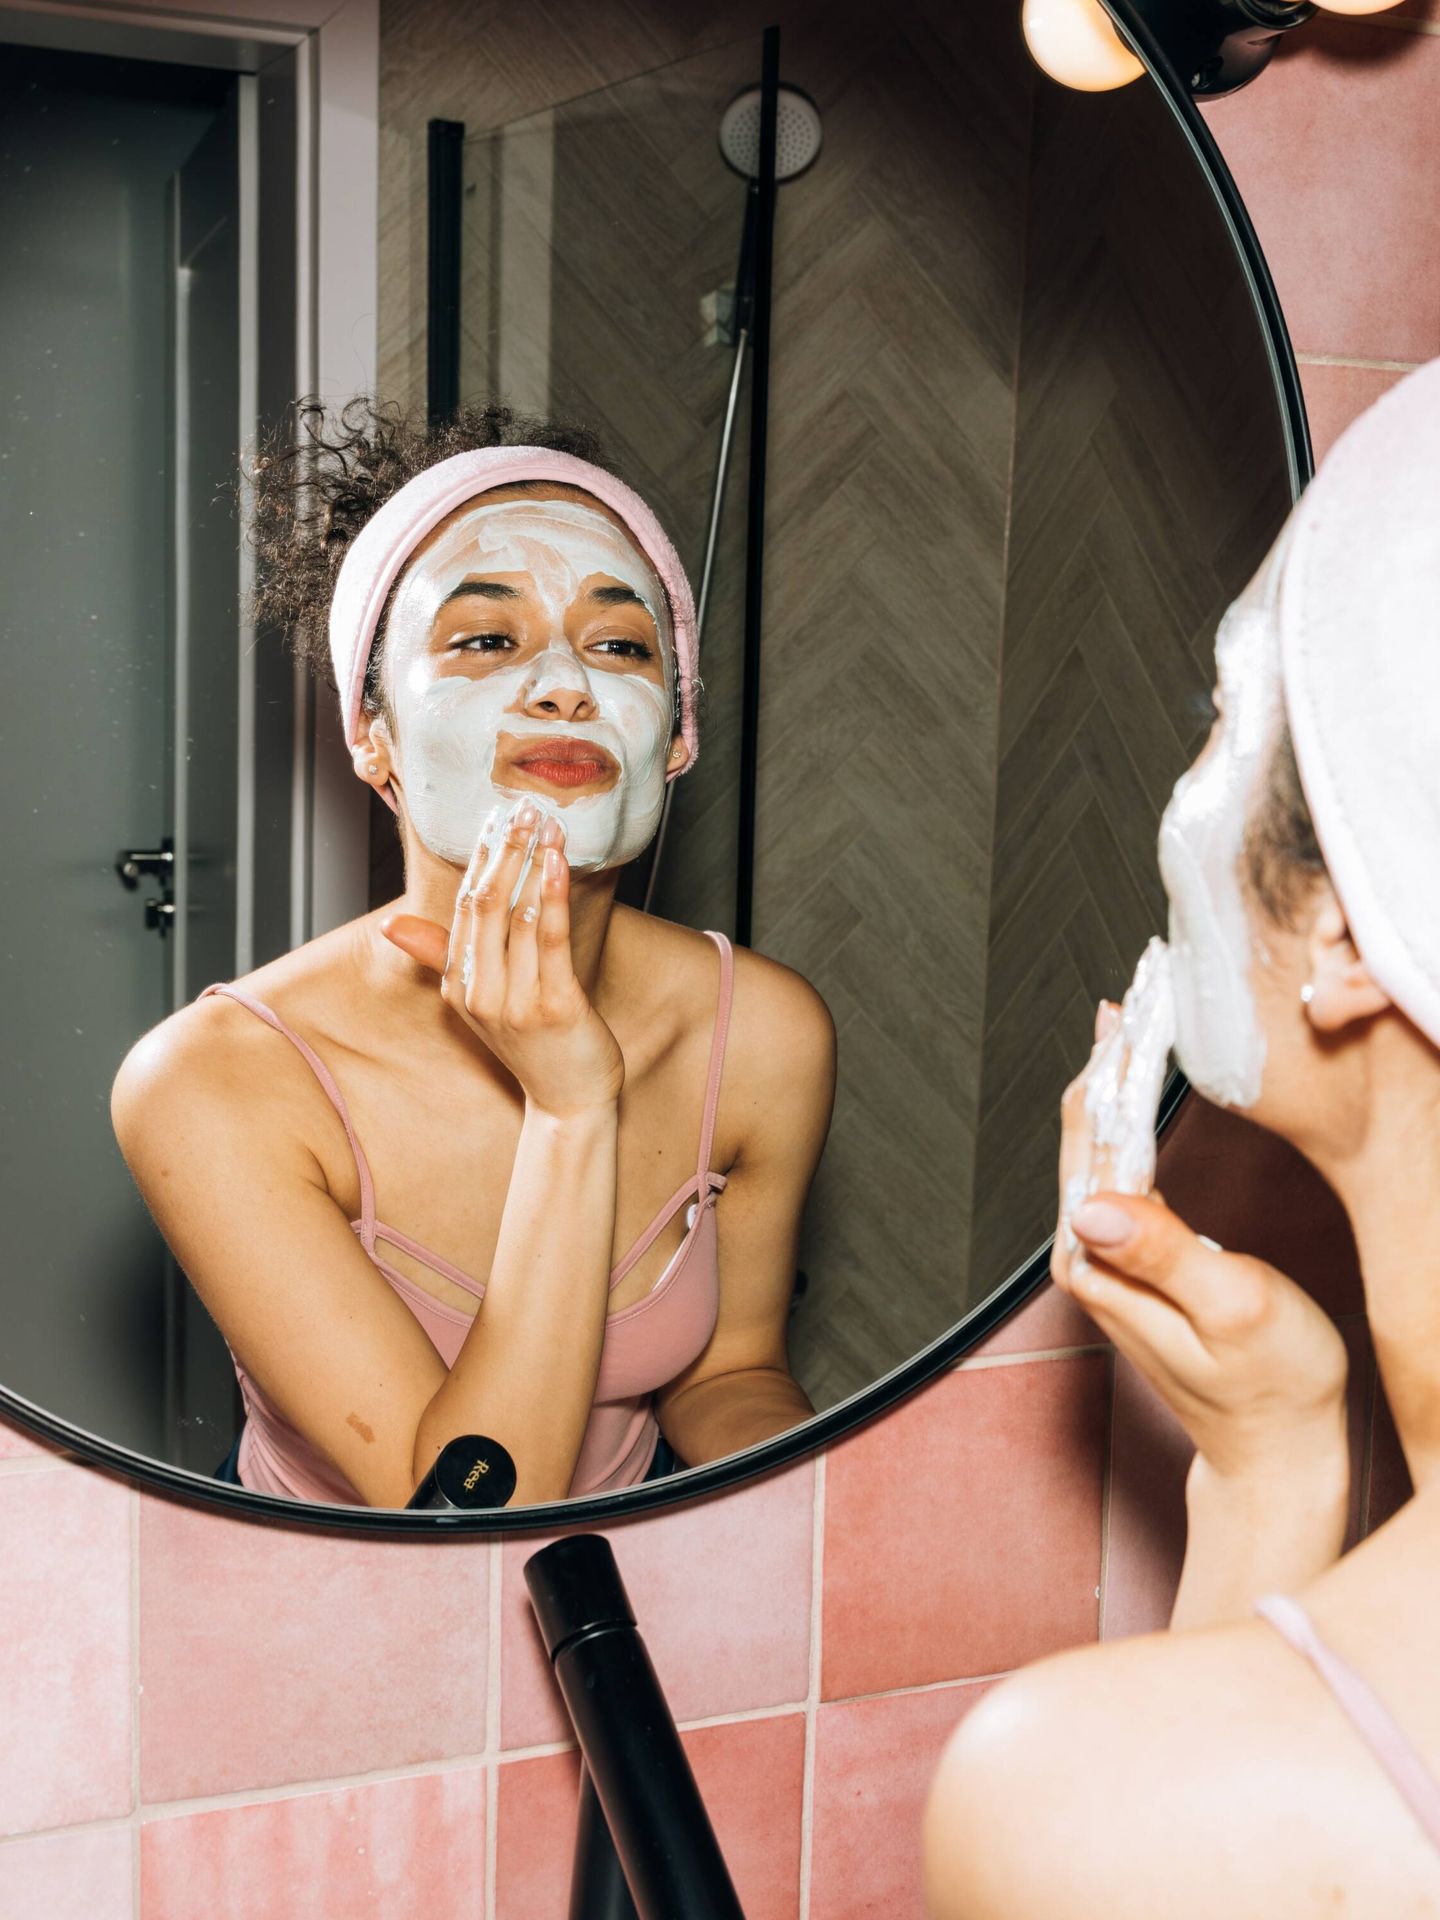 La limpieza es un paso esencial para la salud y la belleza de la piel. (Koolshooters para Pexels)